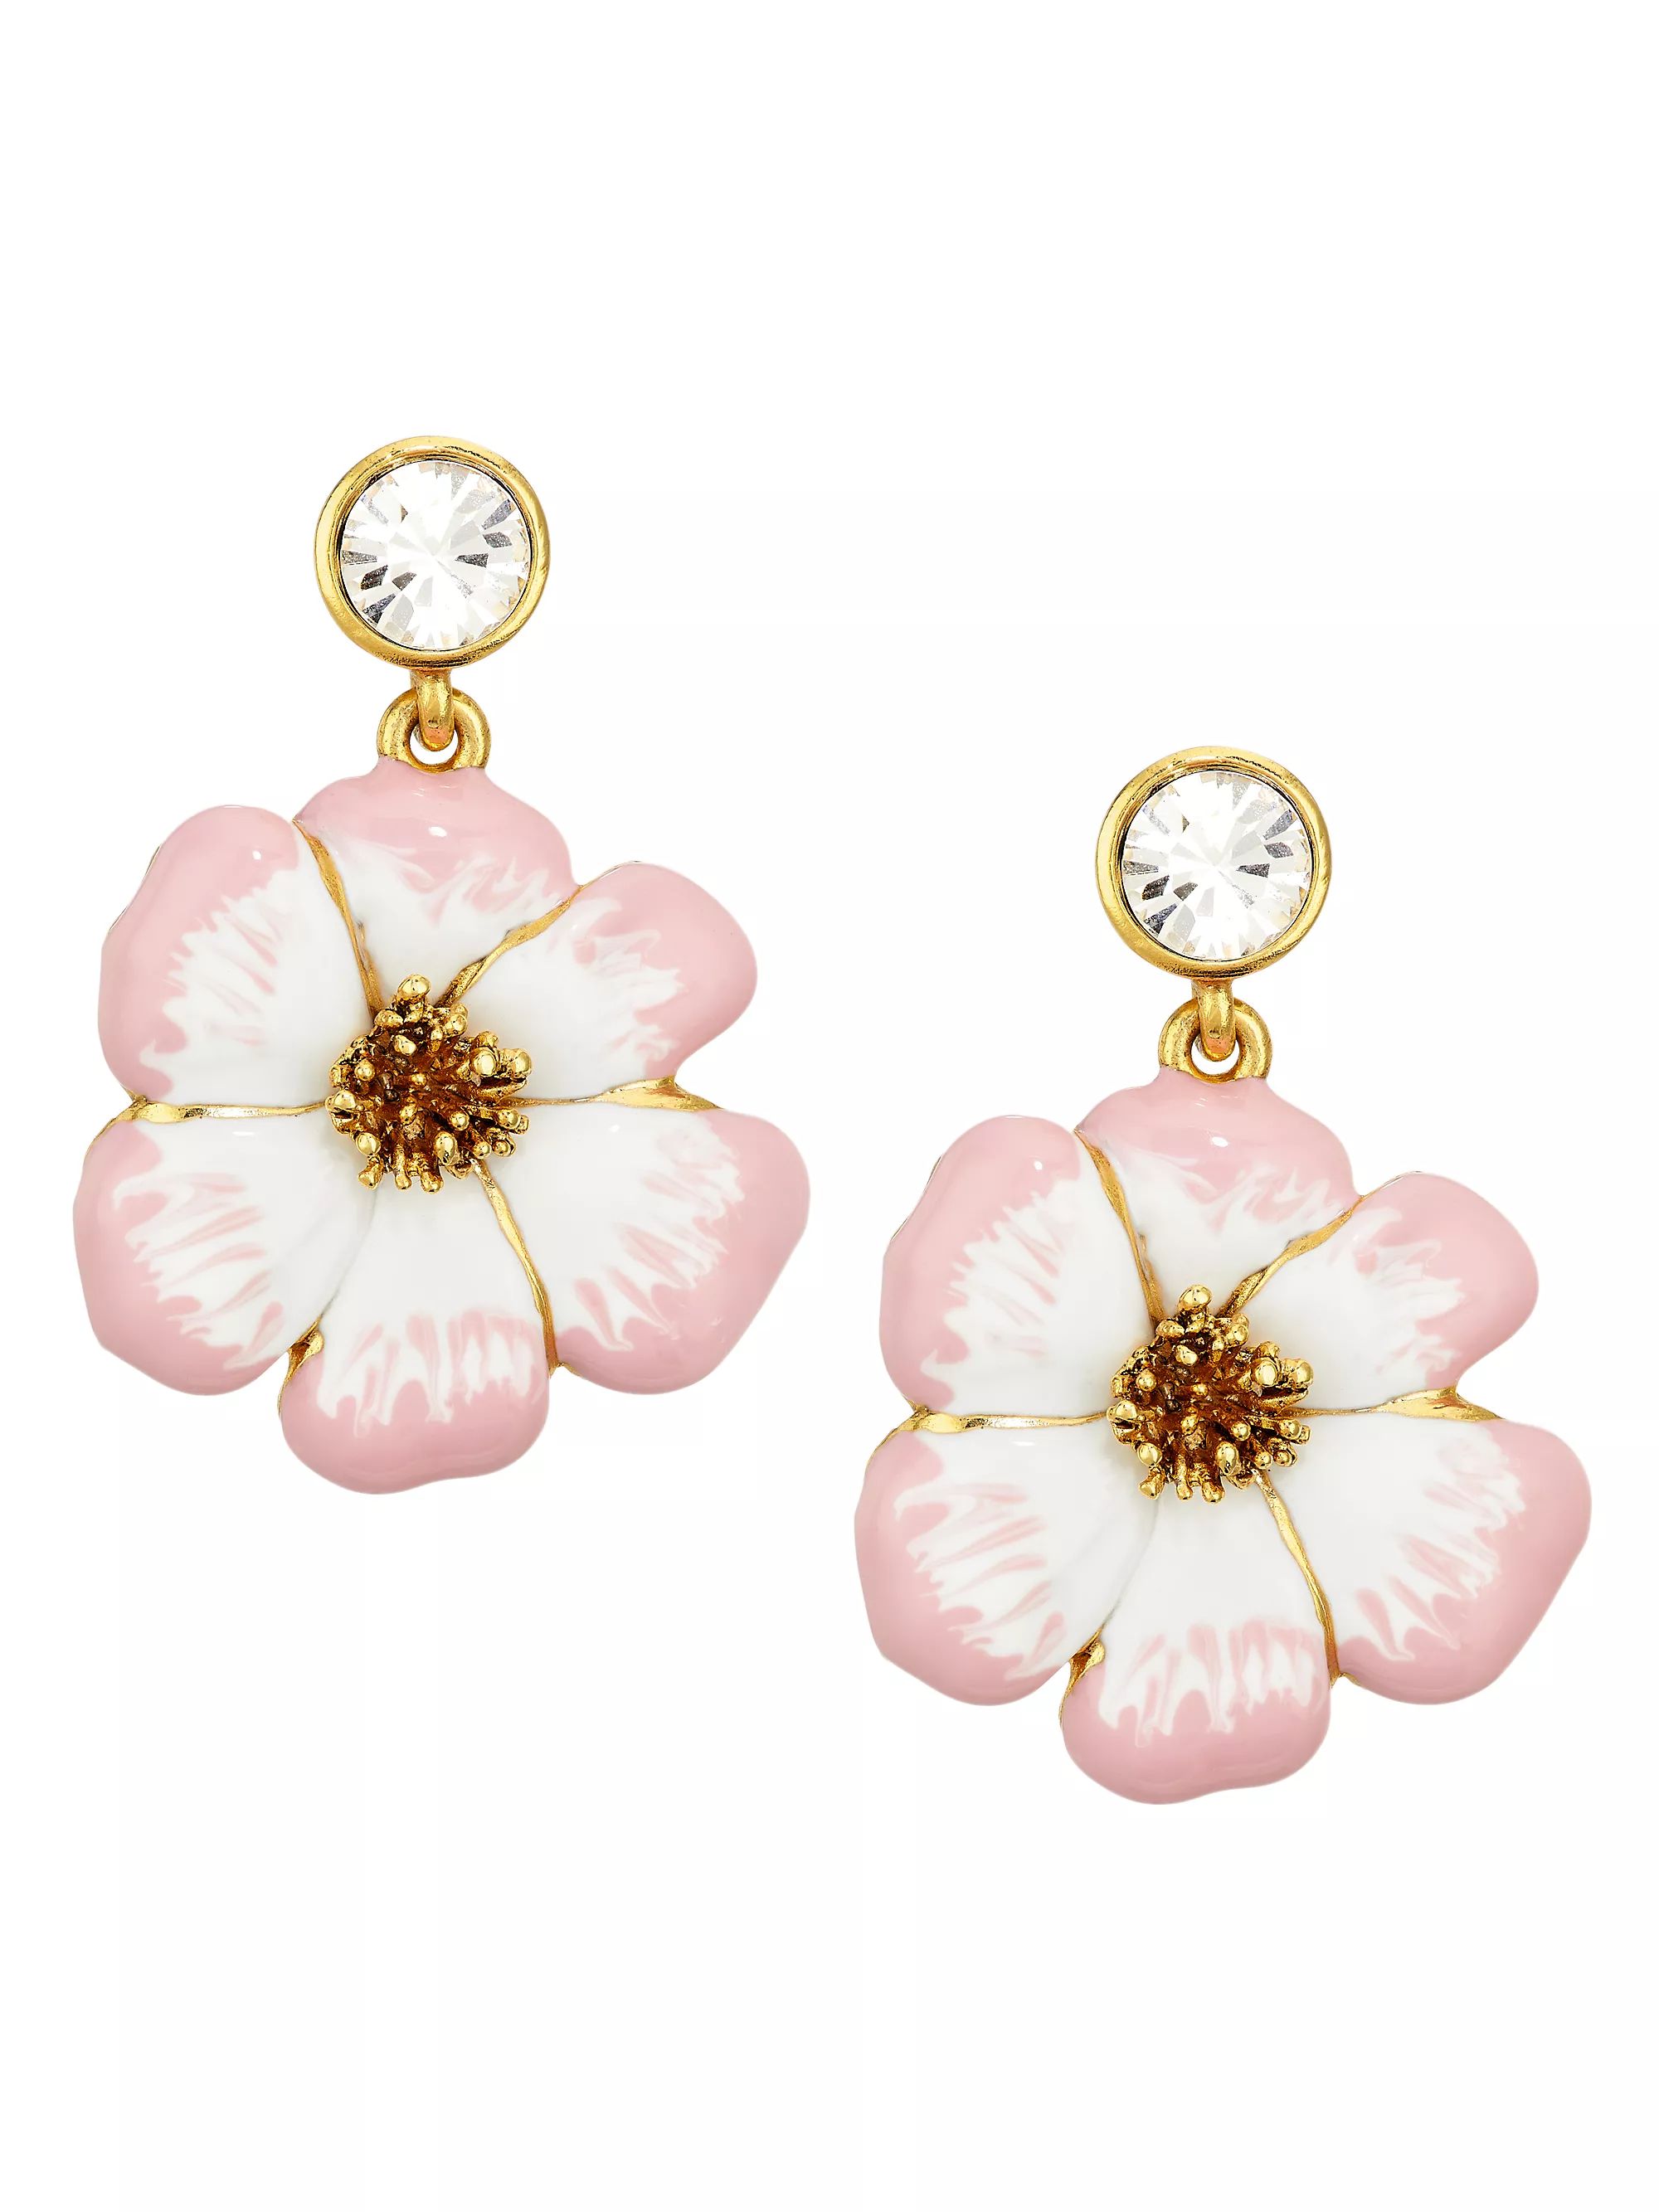 Goldtone, Enamel & Glass Crystal Flower Drop Earrings | Saks Fifth Avenue